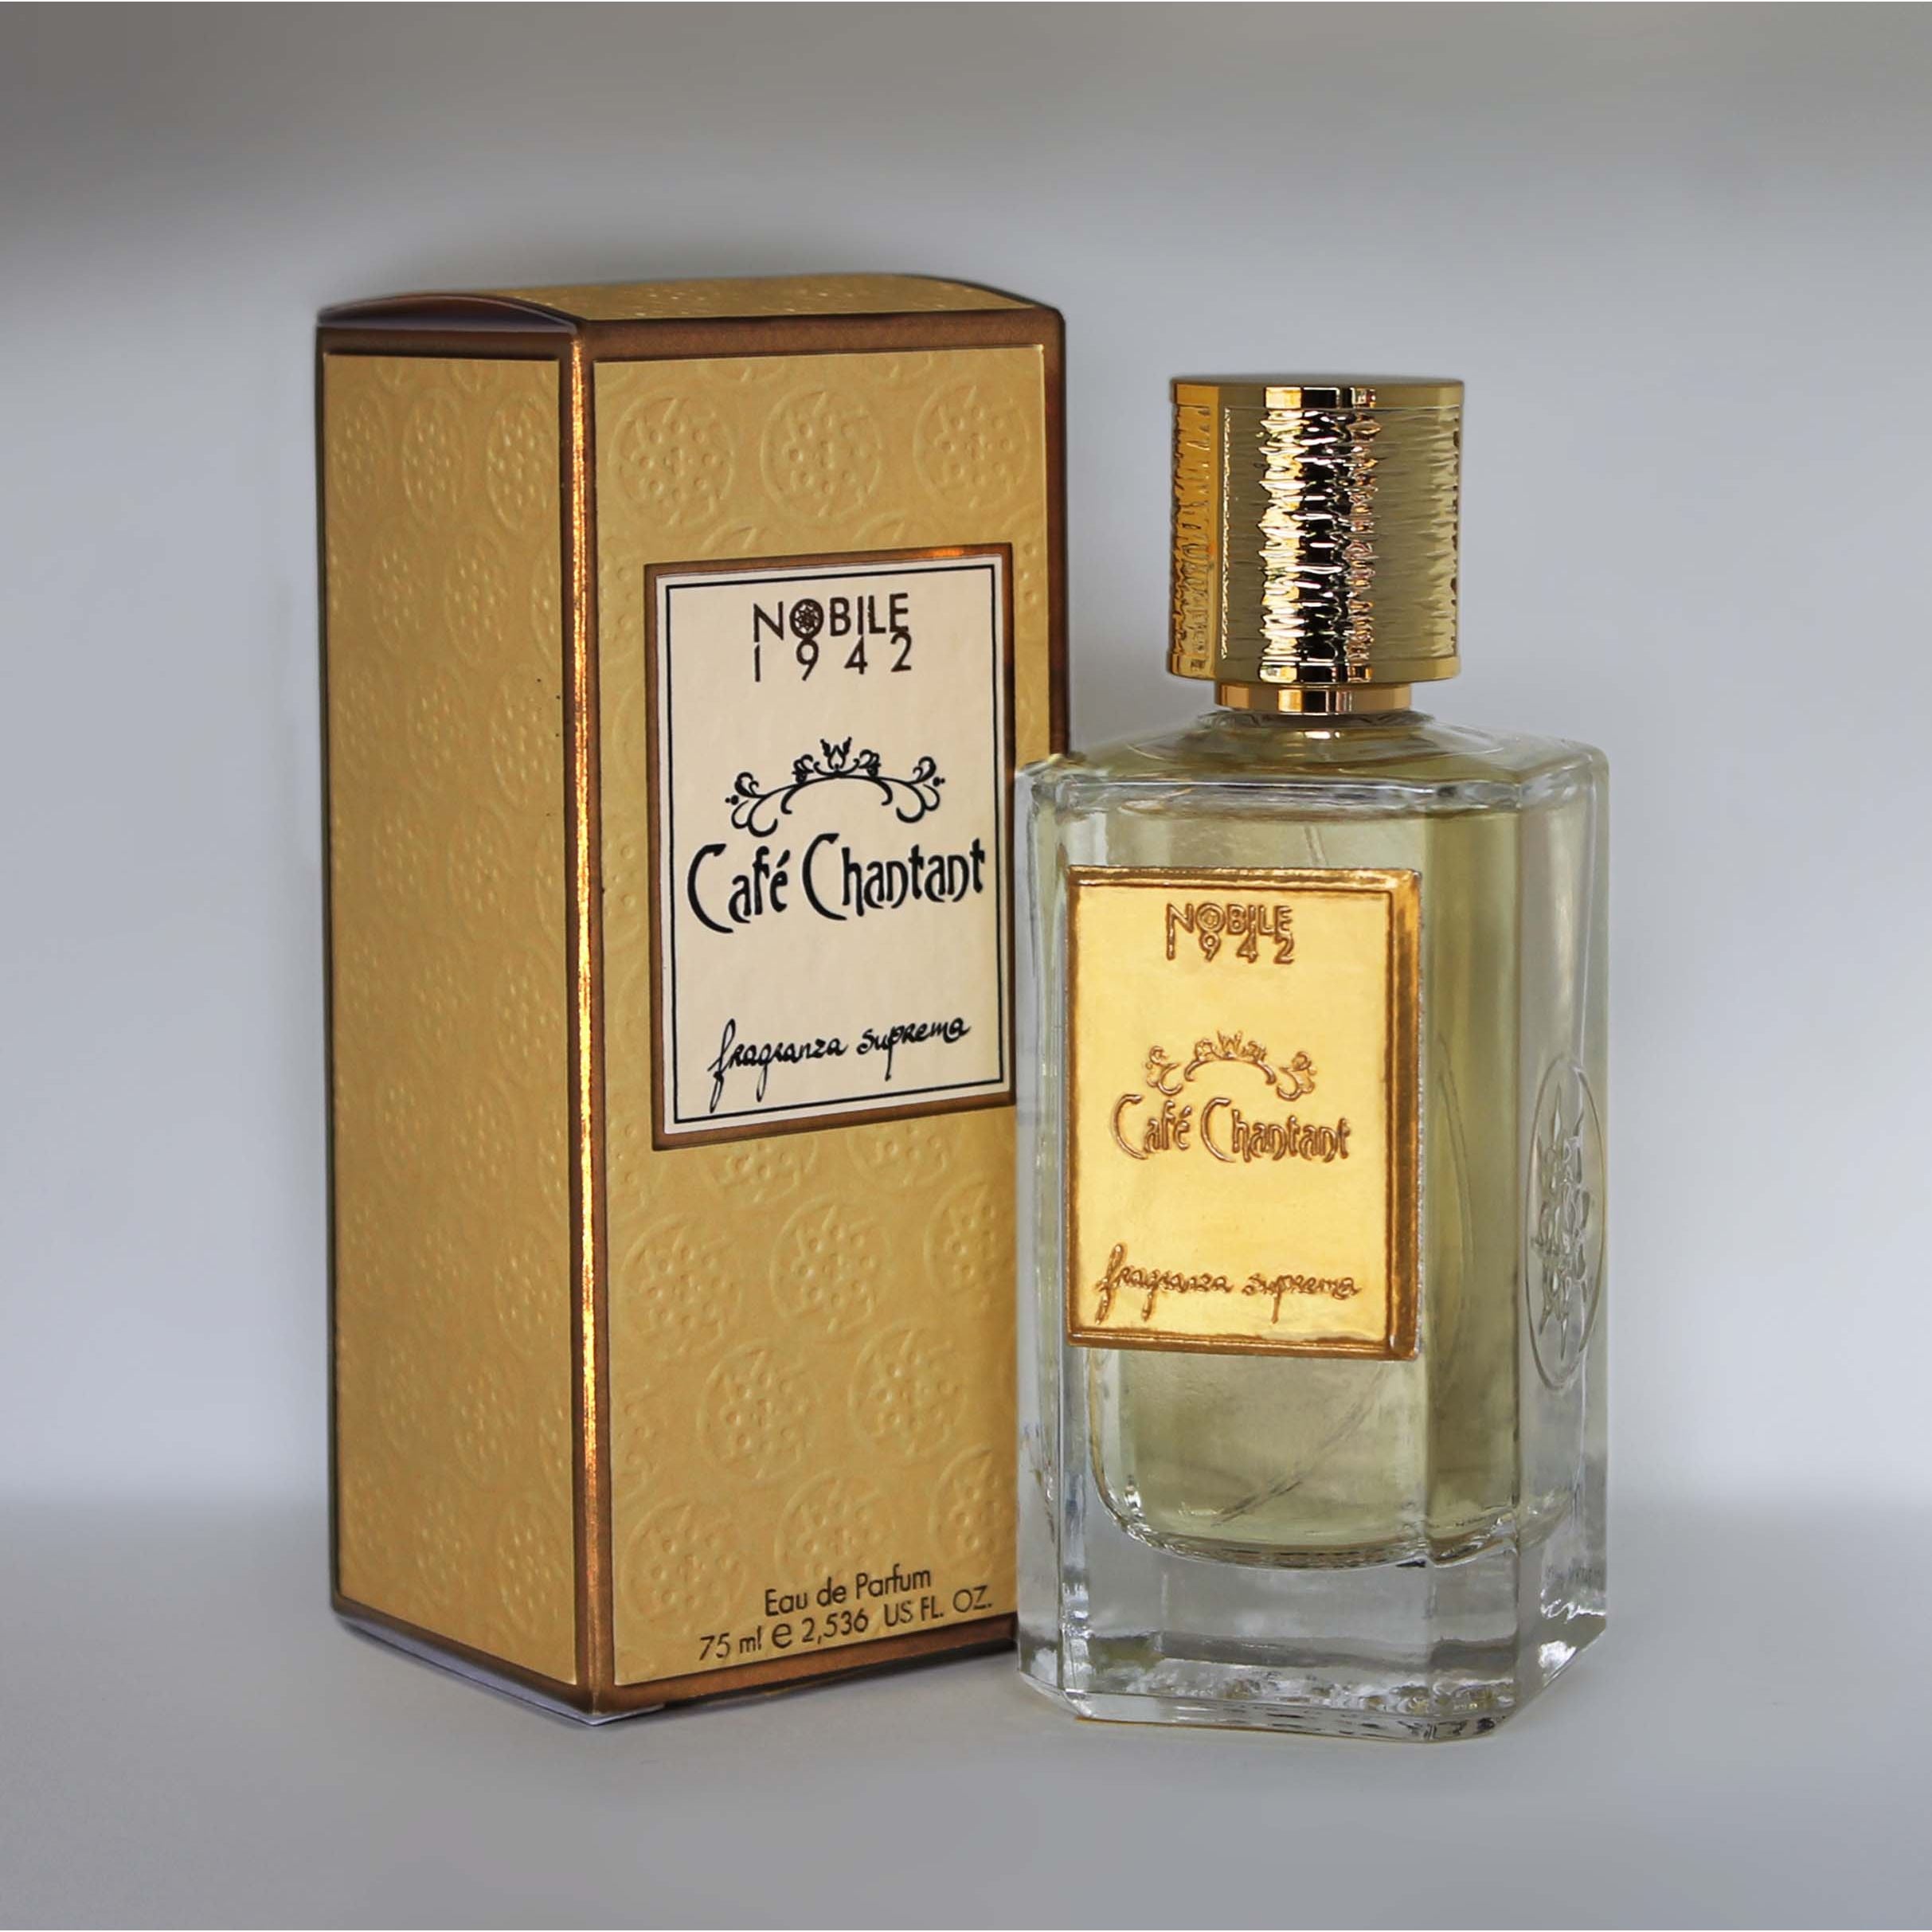 Nobile 1942 - Cafe Chantant - Eau de Parfum